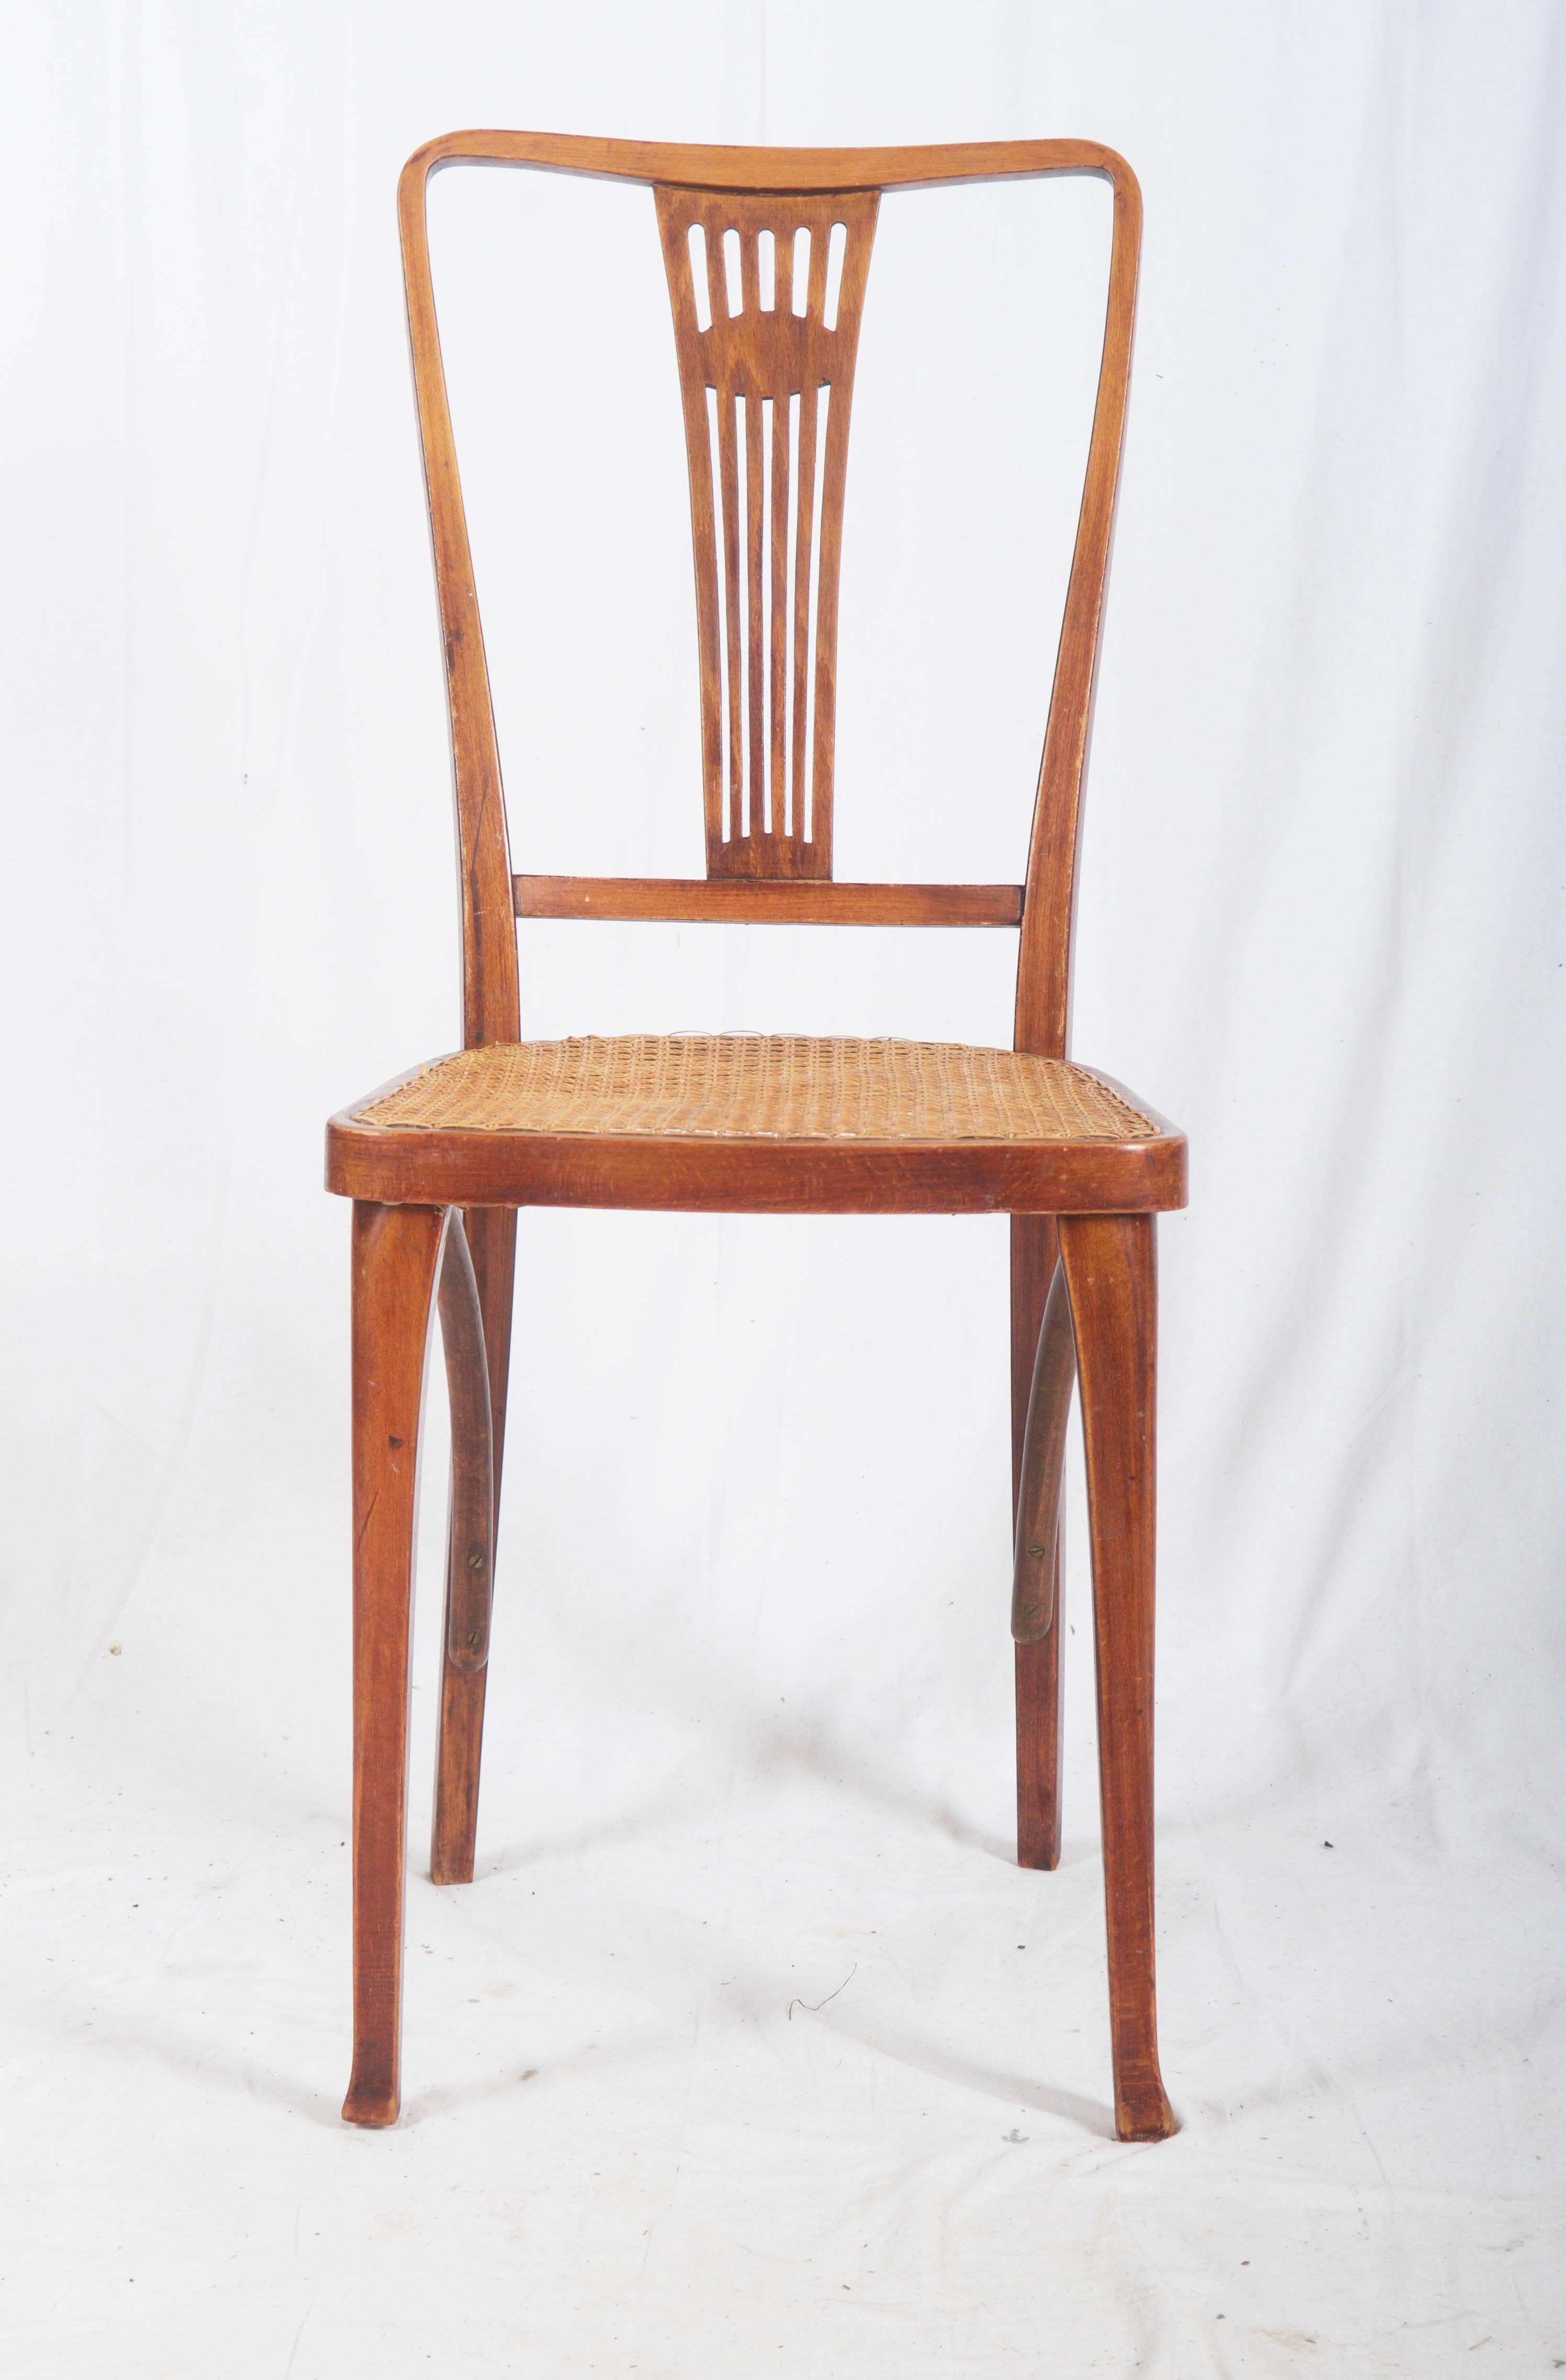 Thonet-Stühle mit Can-Sitz (neue Canning).
Professionell restauriert mit neuen Dosen
bis zu drei Stück erhältlich.